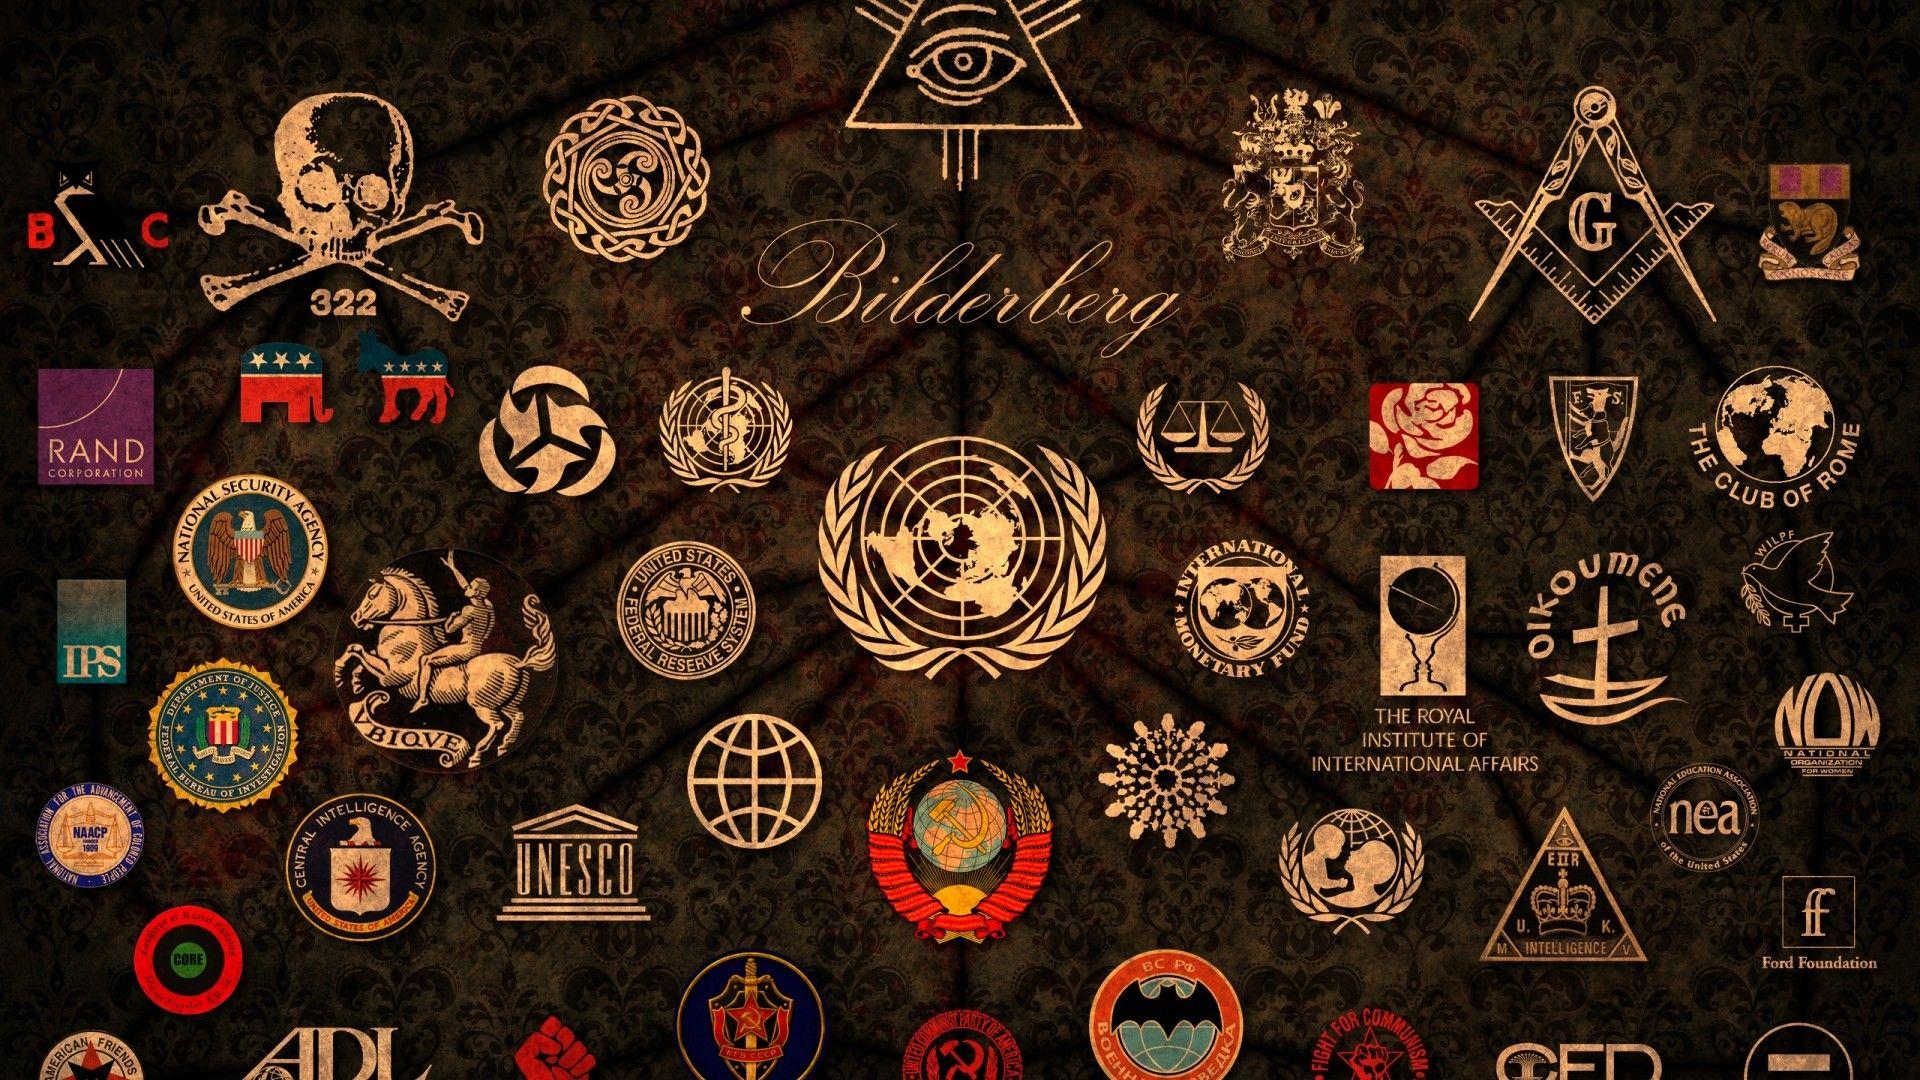 illuminati, badges, logos, Masons, unicef, symbols wallpaper